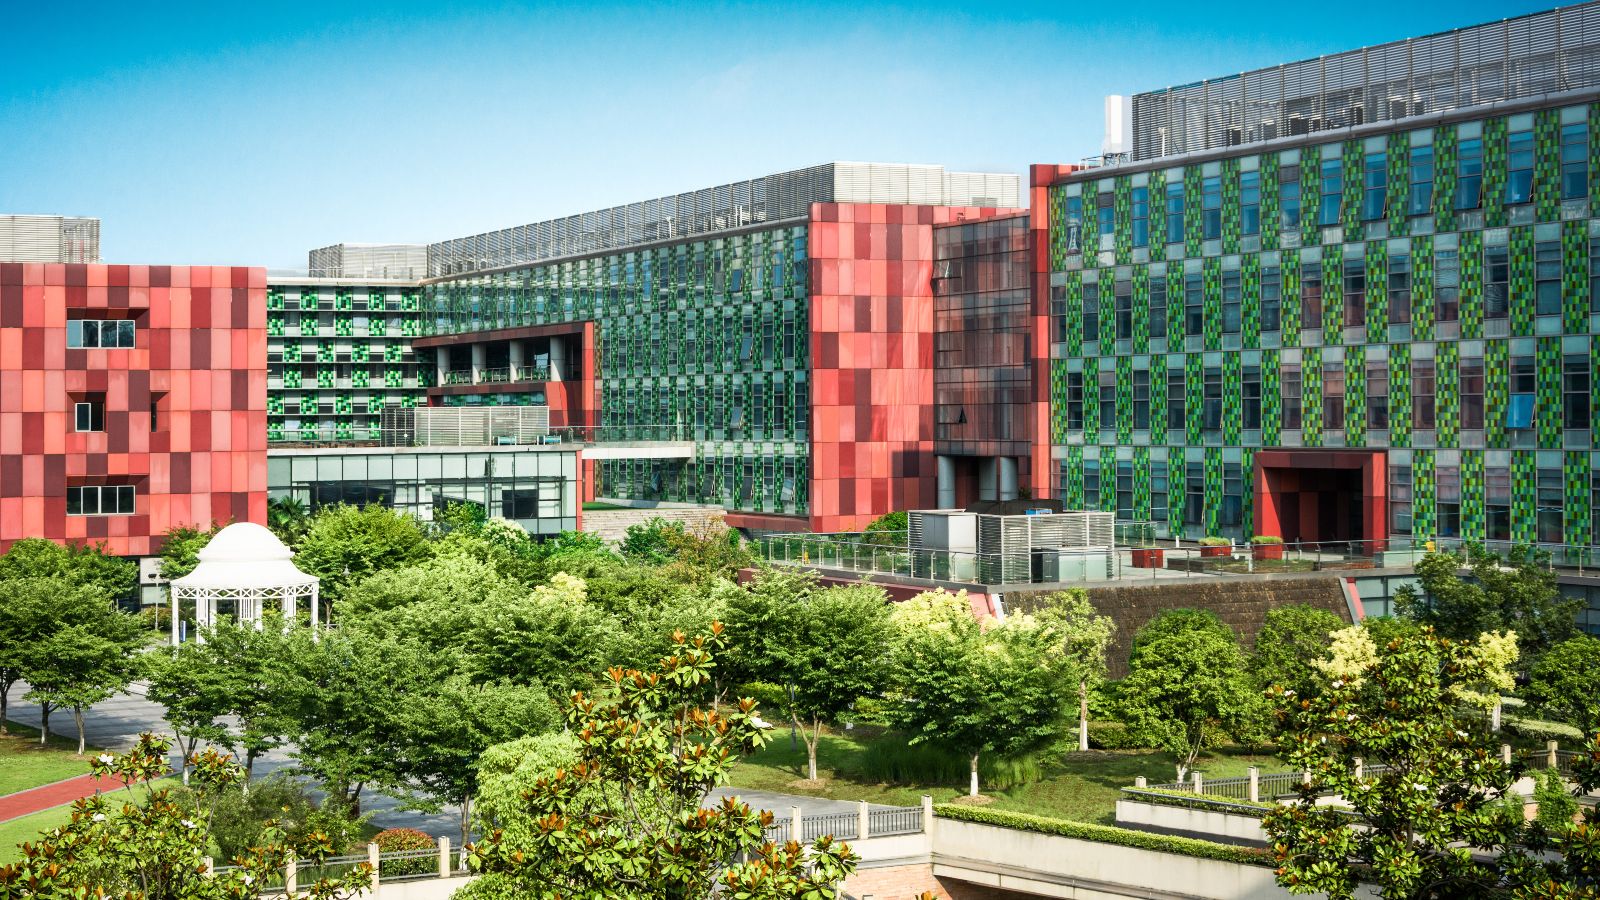 Von Bürogebäuden eingerahmte Grünfläche mit Bäumen, Wegen und einem Pavillon. Im Hintergrund ist blauer Himmel zu sehen.